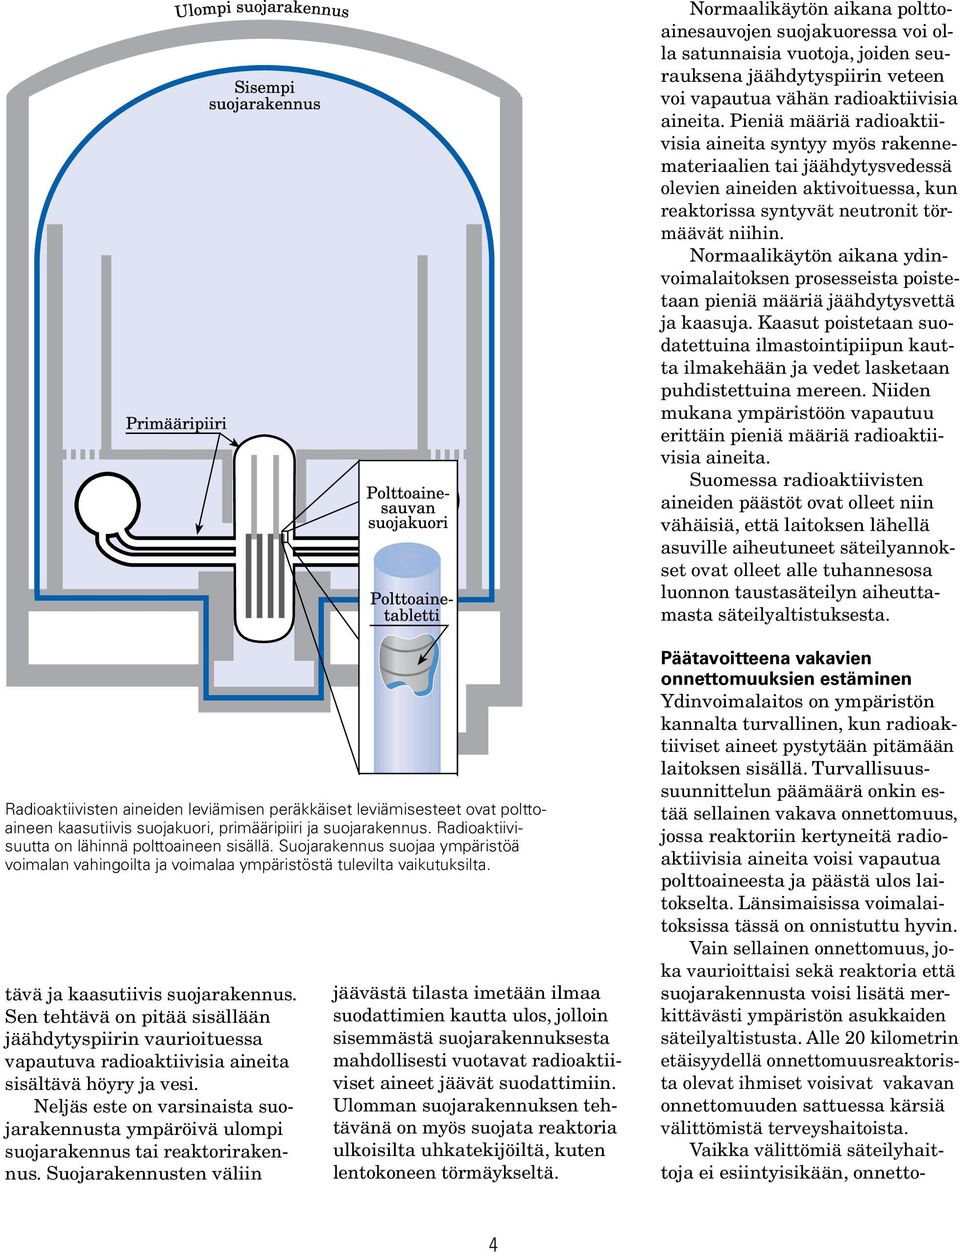 Normaalikäytön aikana ydinvoimalaitoksen prosesseista poistetaan pieniä määriä jäähdytys vettä ja kaasuja.